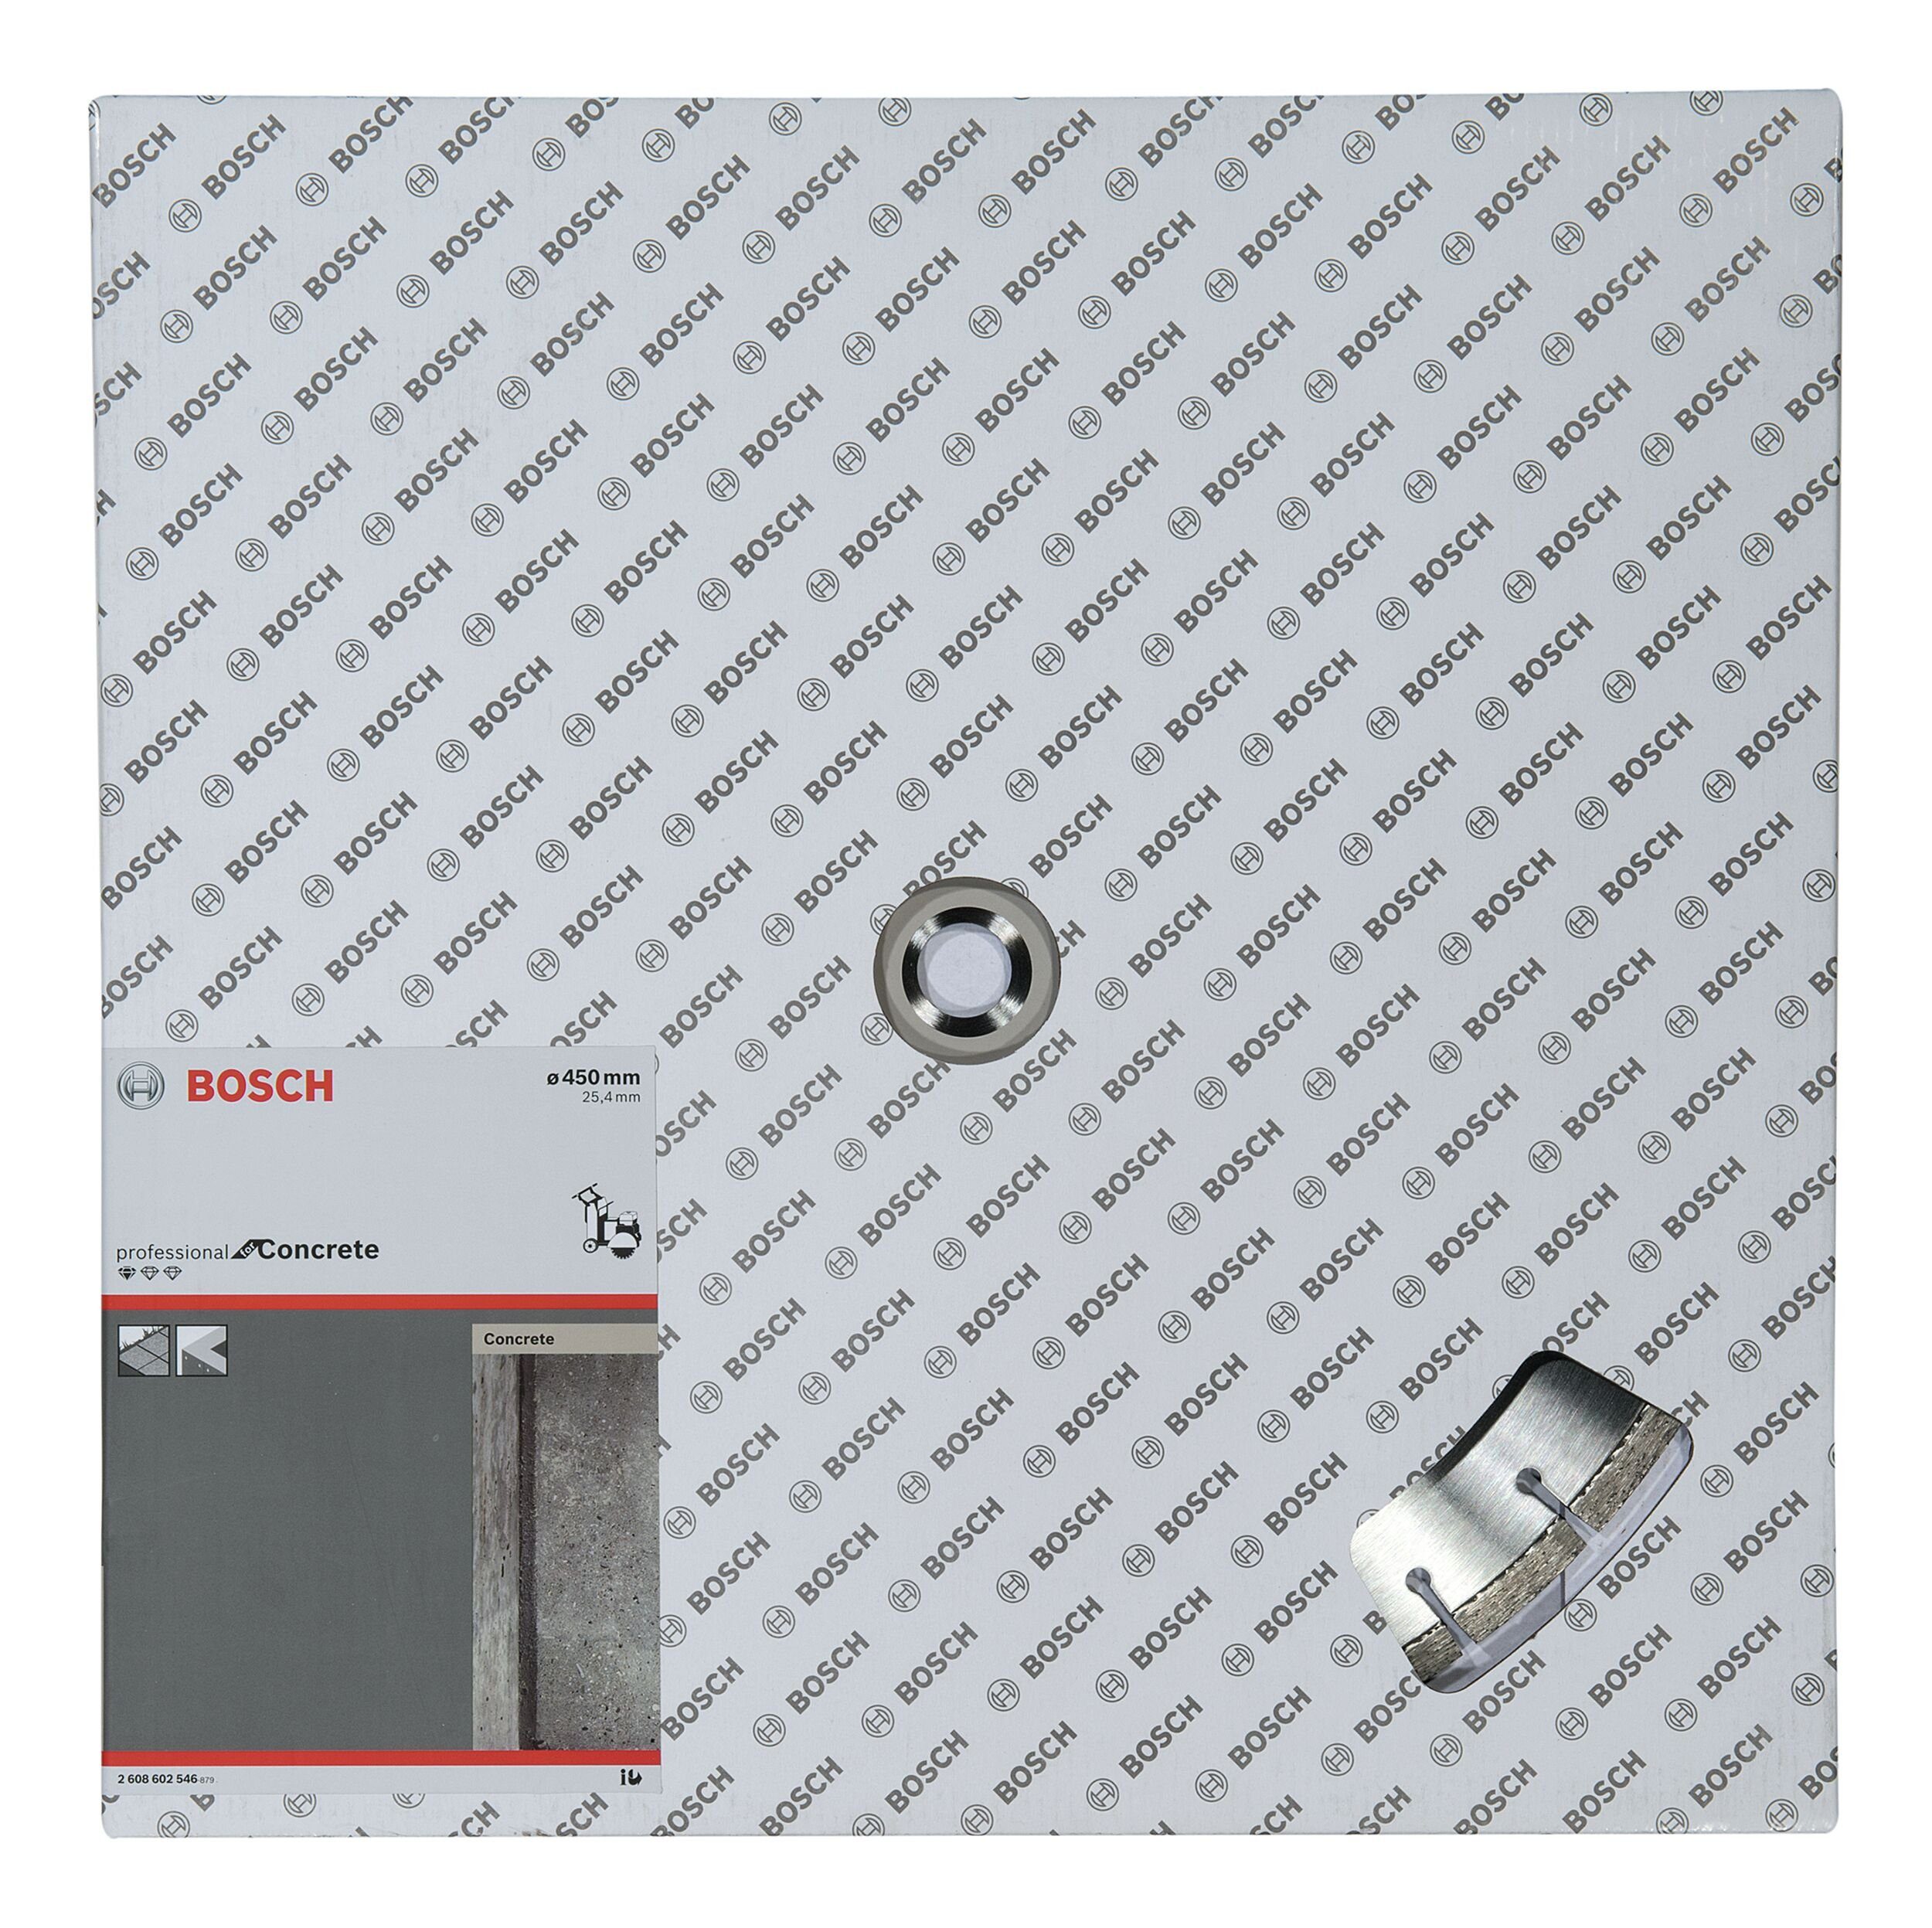 3,6 Diamanttrennscheibe 450 25,4 x mm Ø for Concrete x Trennscheibe, - 10 Standard x mm, BOSCH 450